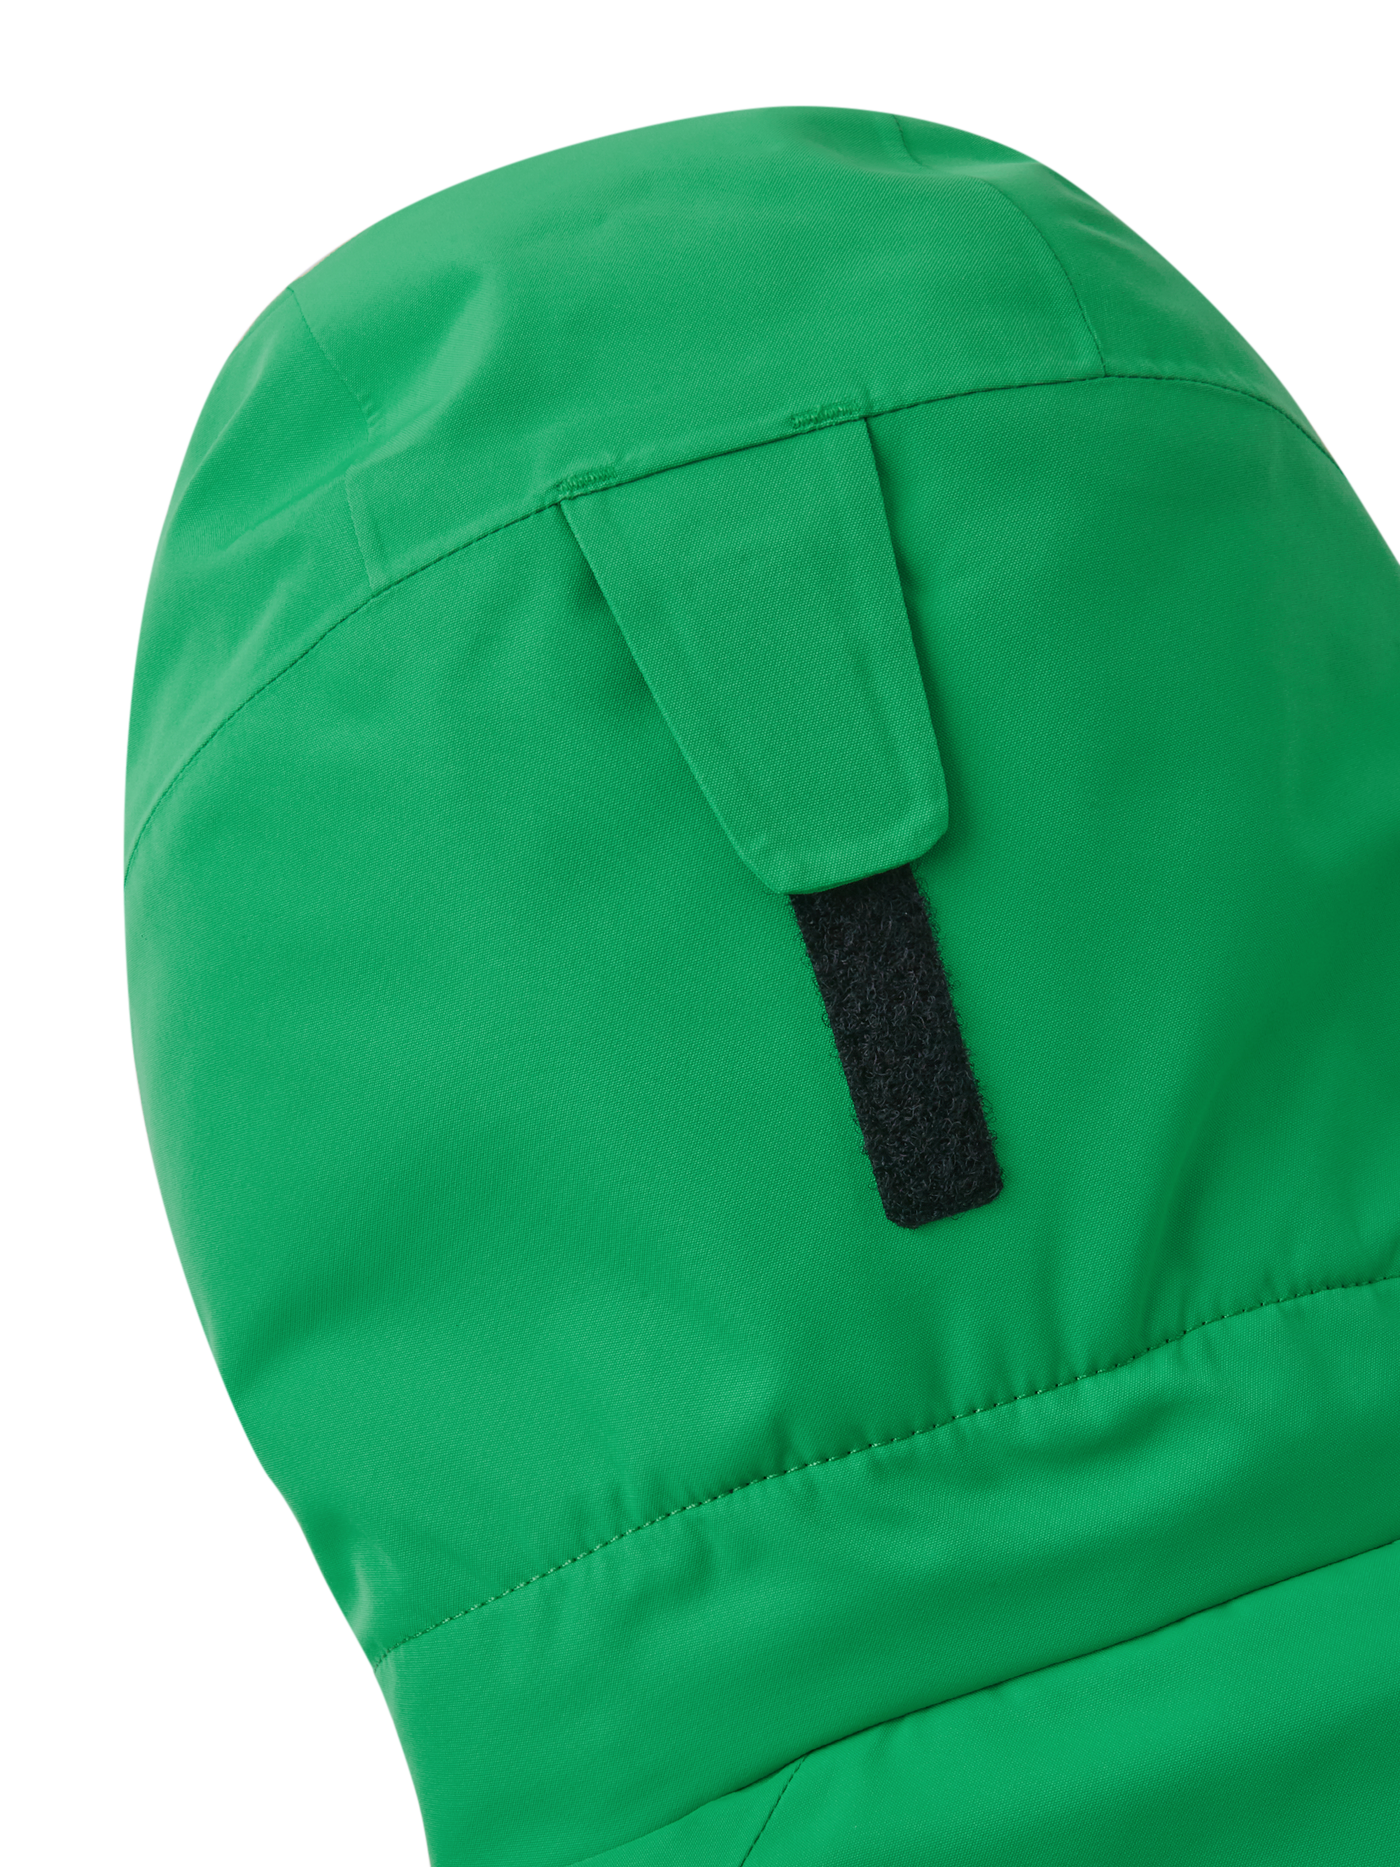 Reiman Reimatec Tieten -laskettelutakki vihreässä sävyssä lähikuvassa lähikuvassa huppu takaa